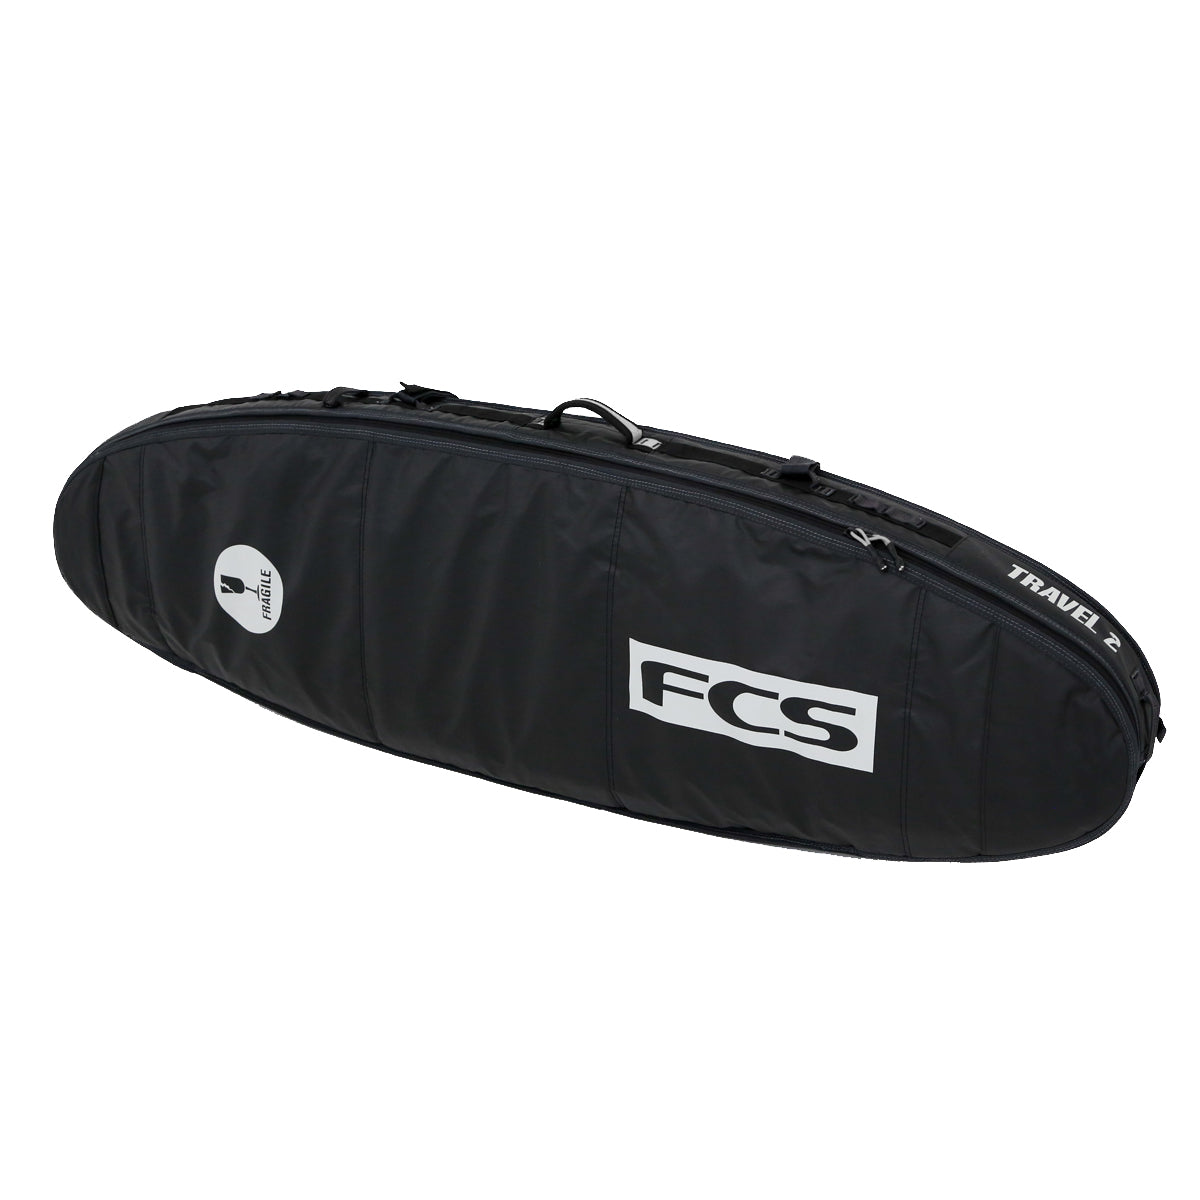 FCS Travel 2 Funboard Boardbag Black-Grey-22 6ft3in